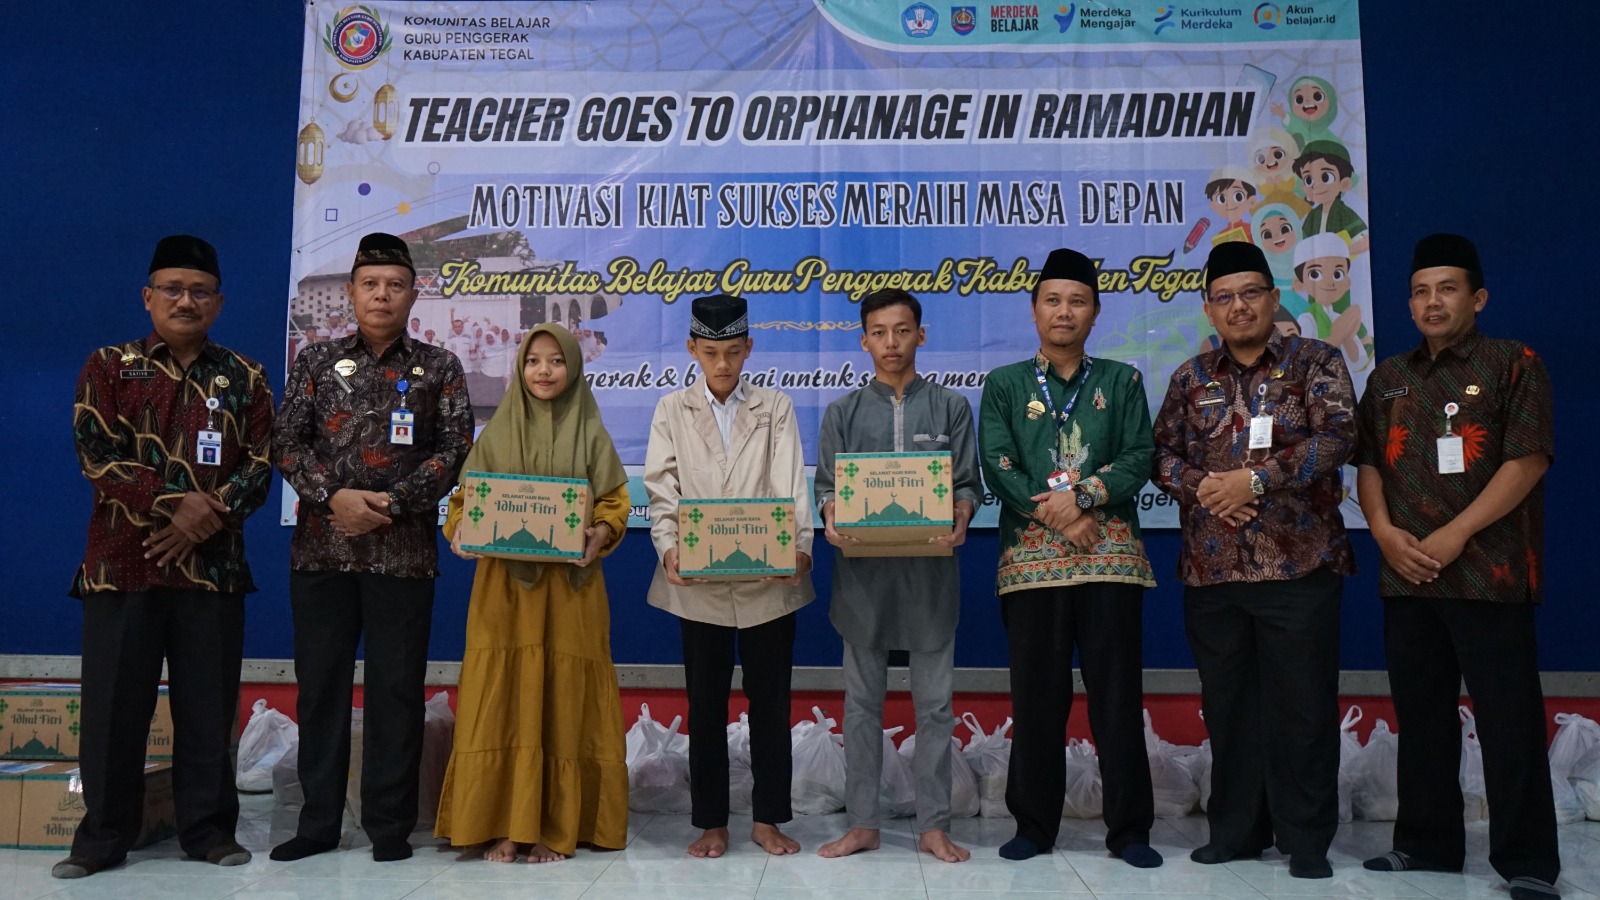 Guru Penggerak Kabupaten Tegal  Warnai Ramadhan dengan Kegiatan Ini